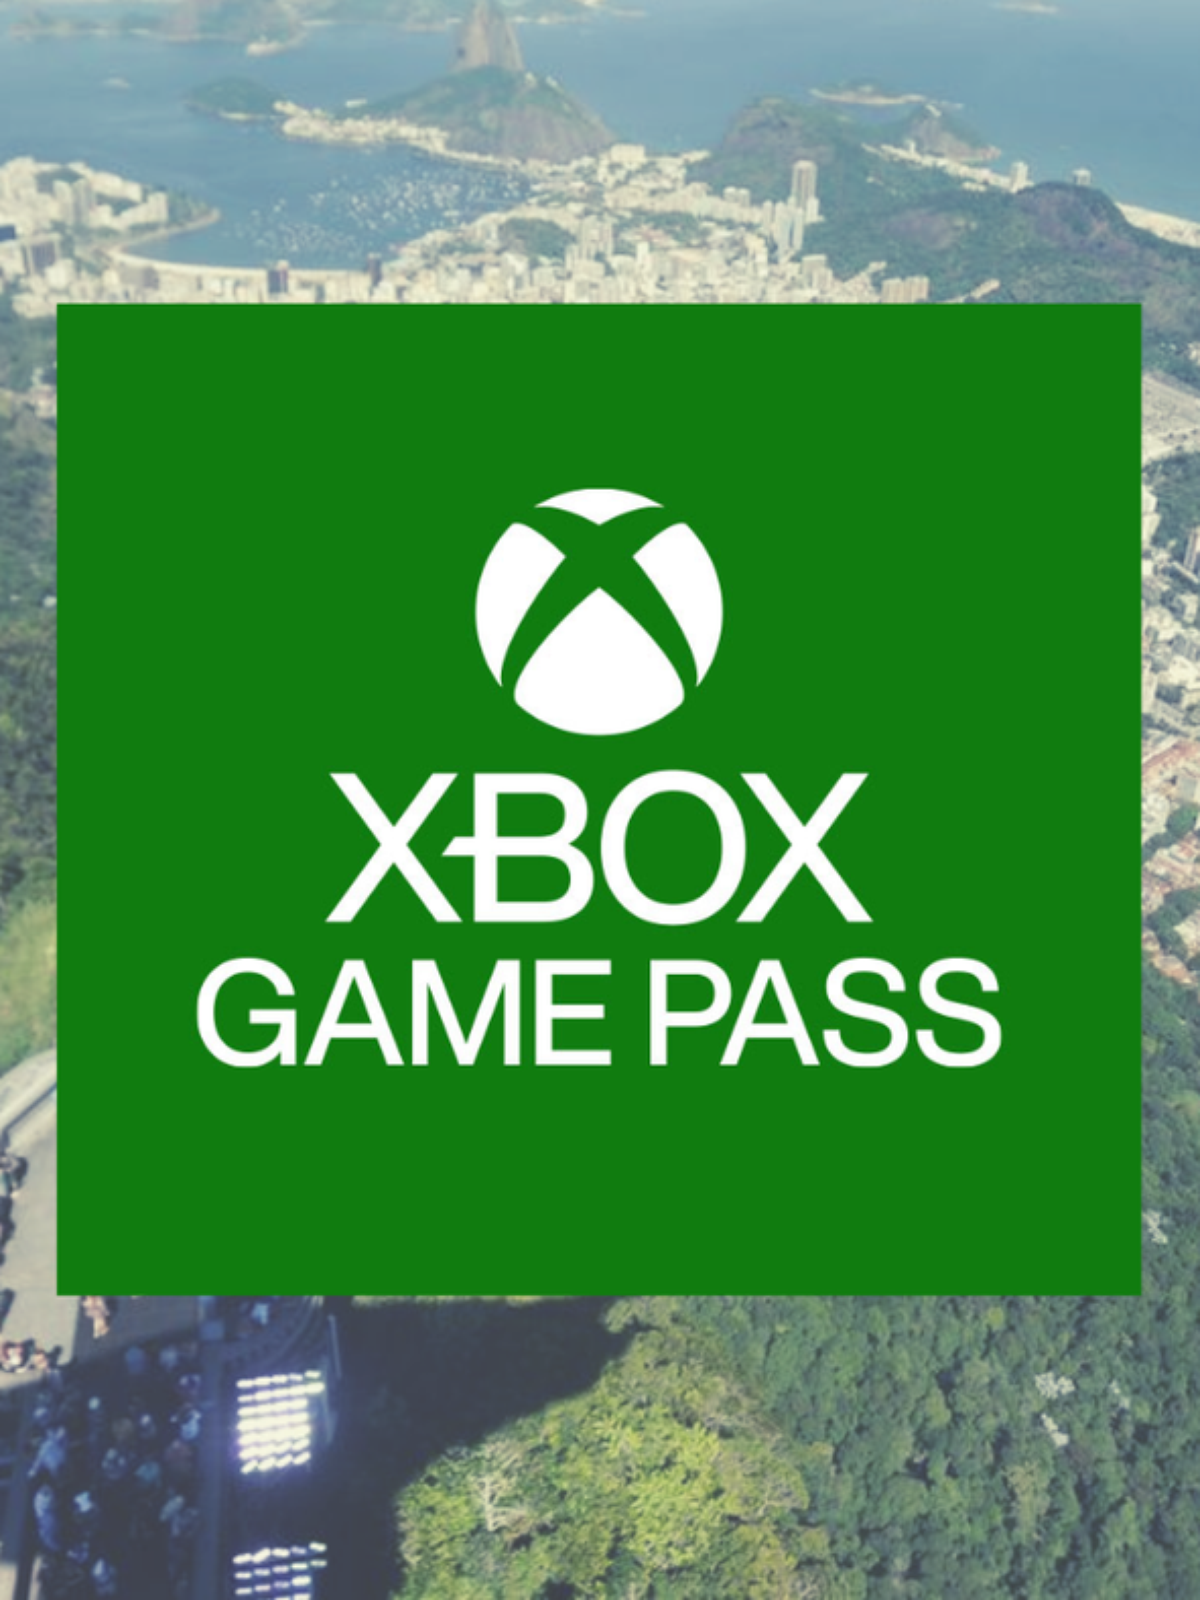 Microsoft confirma plano família para o Xbox Game Pass - Olhar Digital